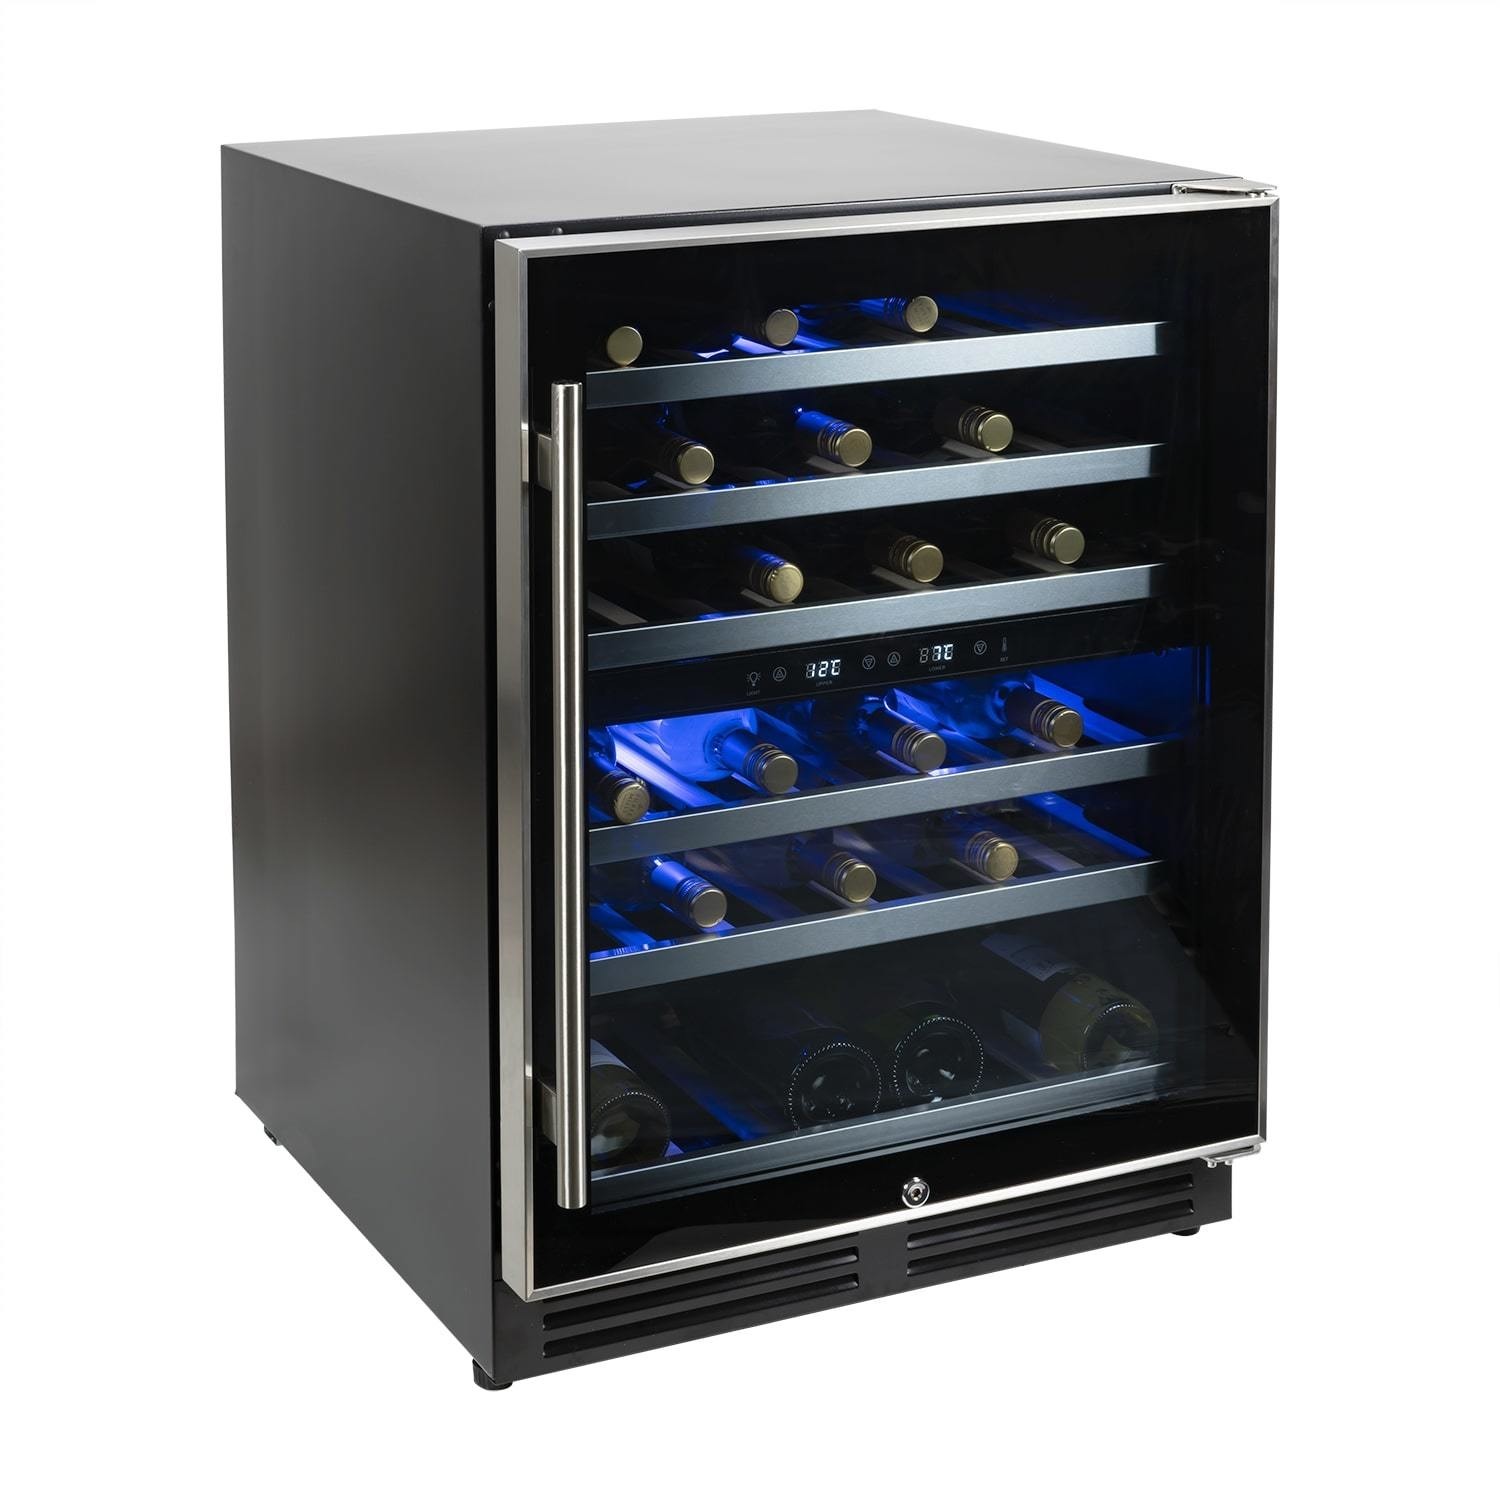 Stainless Steel electriQ 60cm 51 Bottle Wine Cooler Full Range Dual Zone 